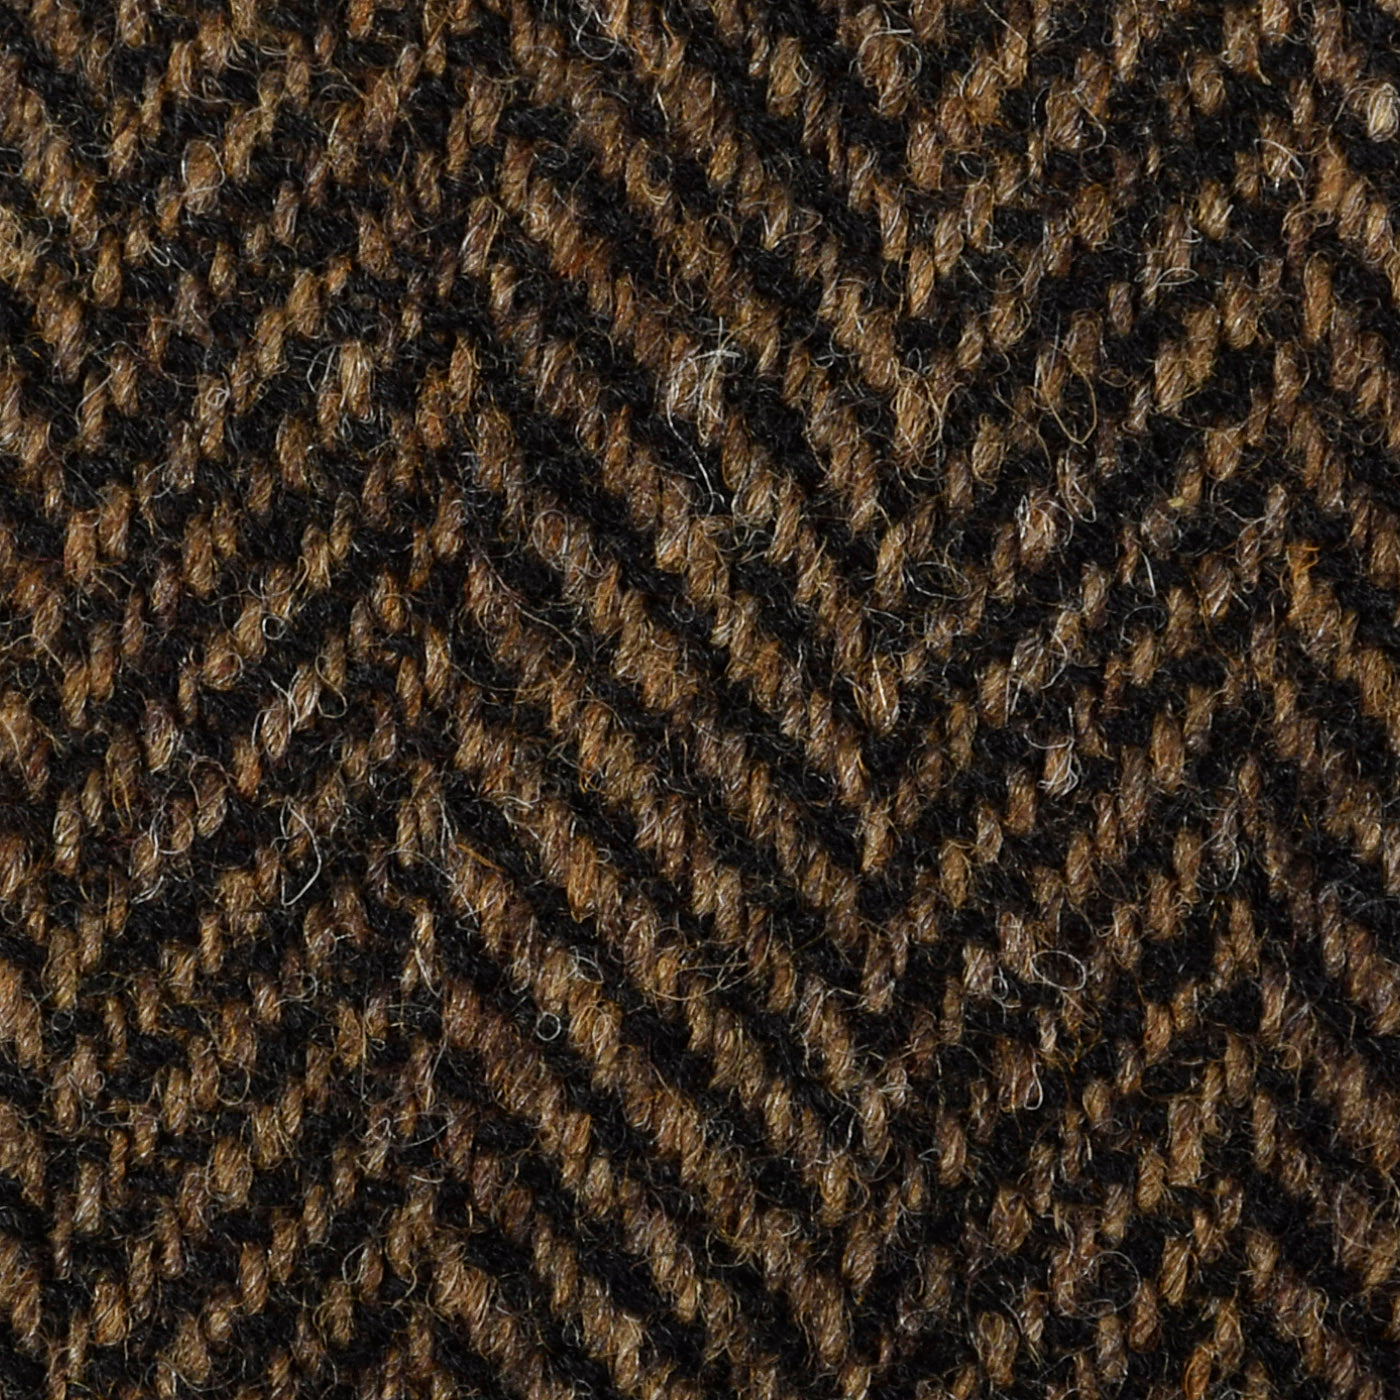 1970s Mens Deadstock Wool Pants in Brown and Black Herringbone